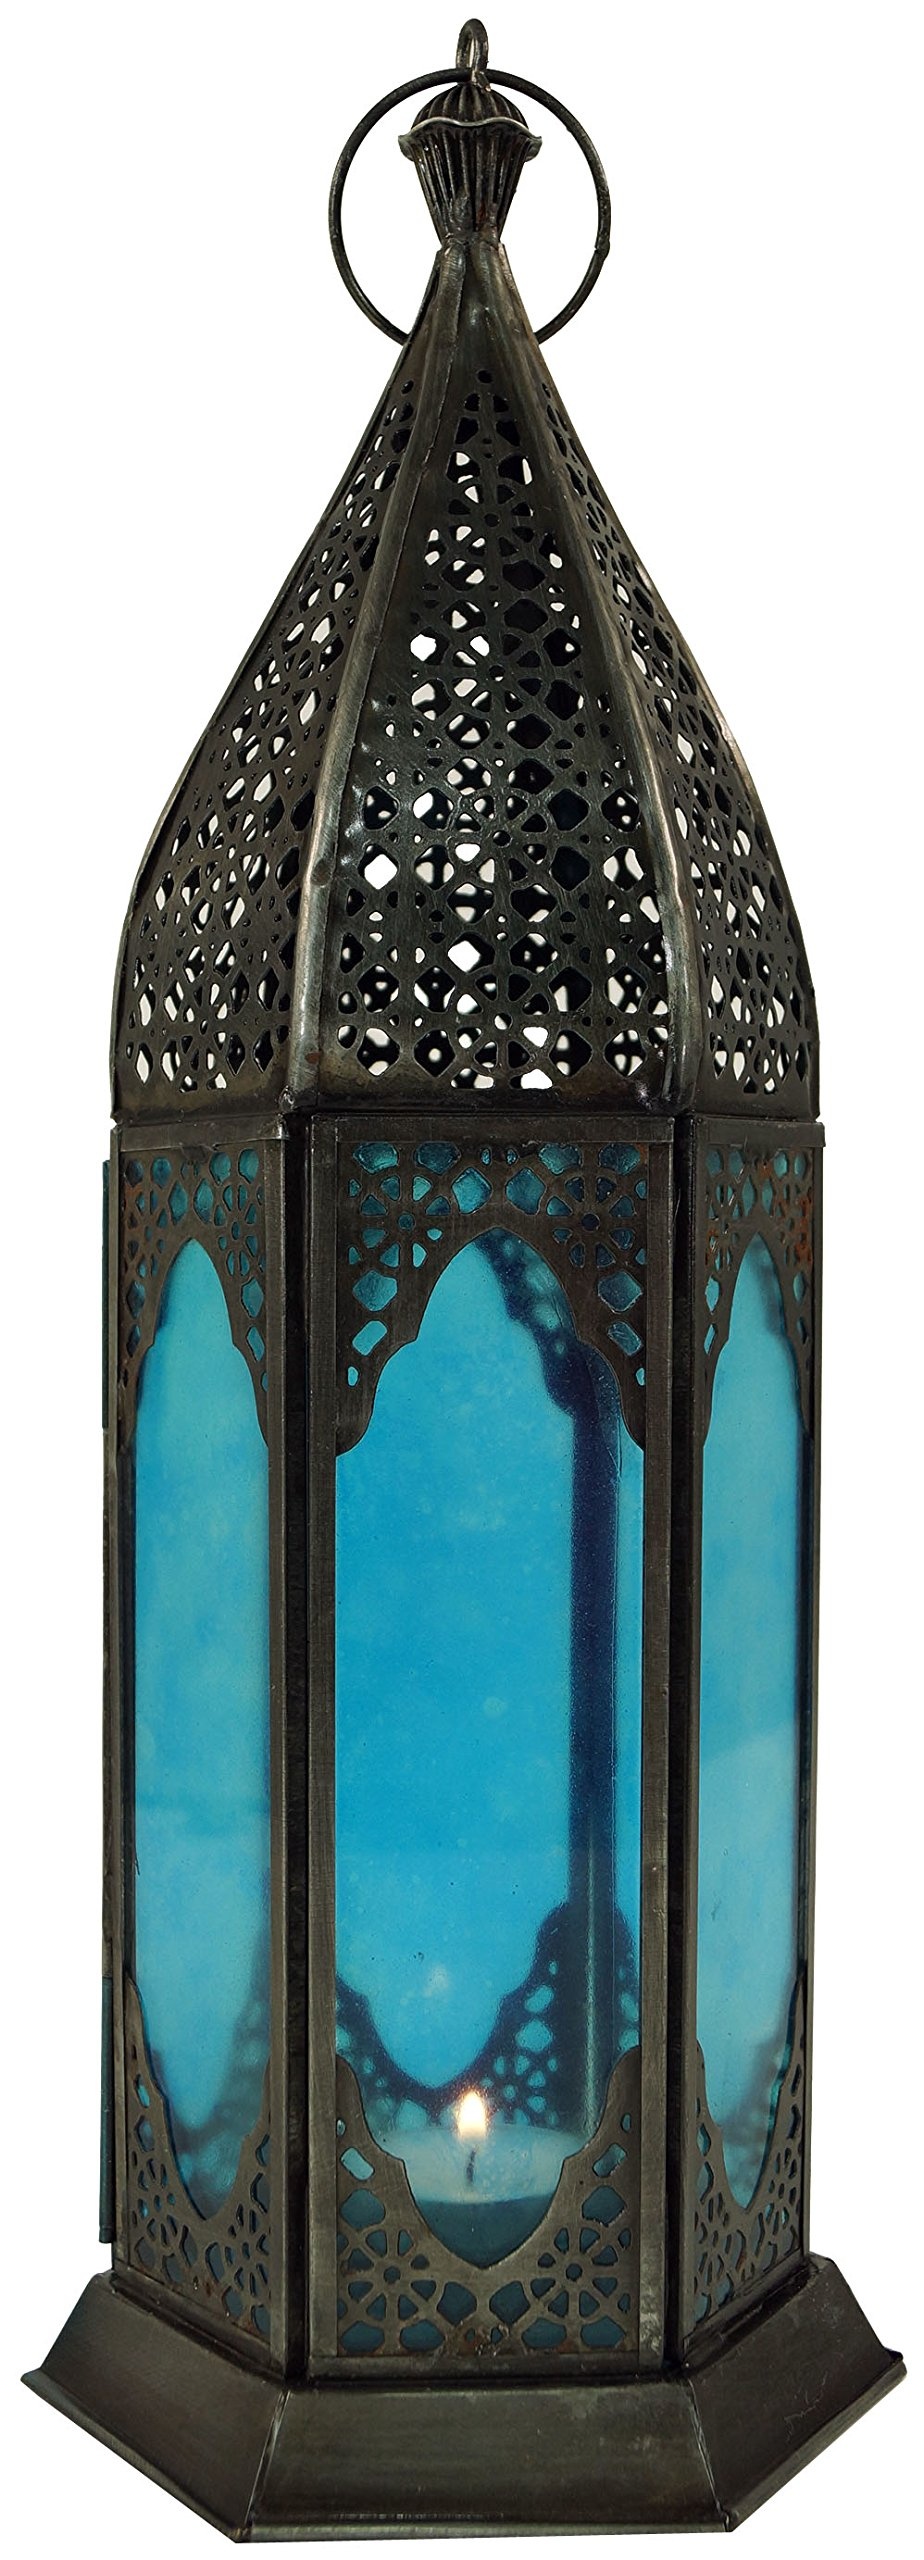 GURU SHOP Orientalische Metall/Glas Laterne in Marrokanischem Design, Windlicht, Türkis, Eisen, Farbe: Türkis, 35x11,5x11,5 cm, Orientalische Laternen